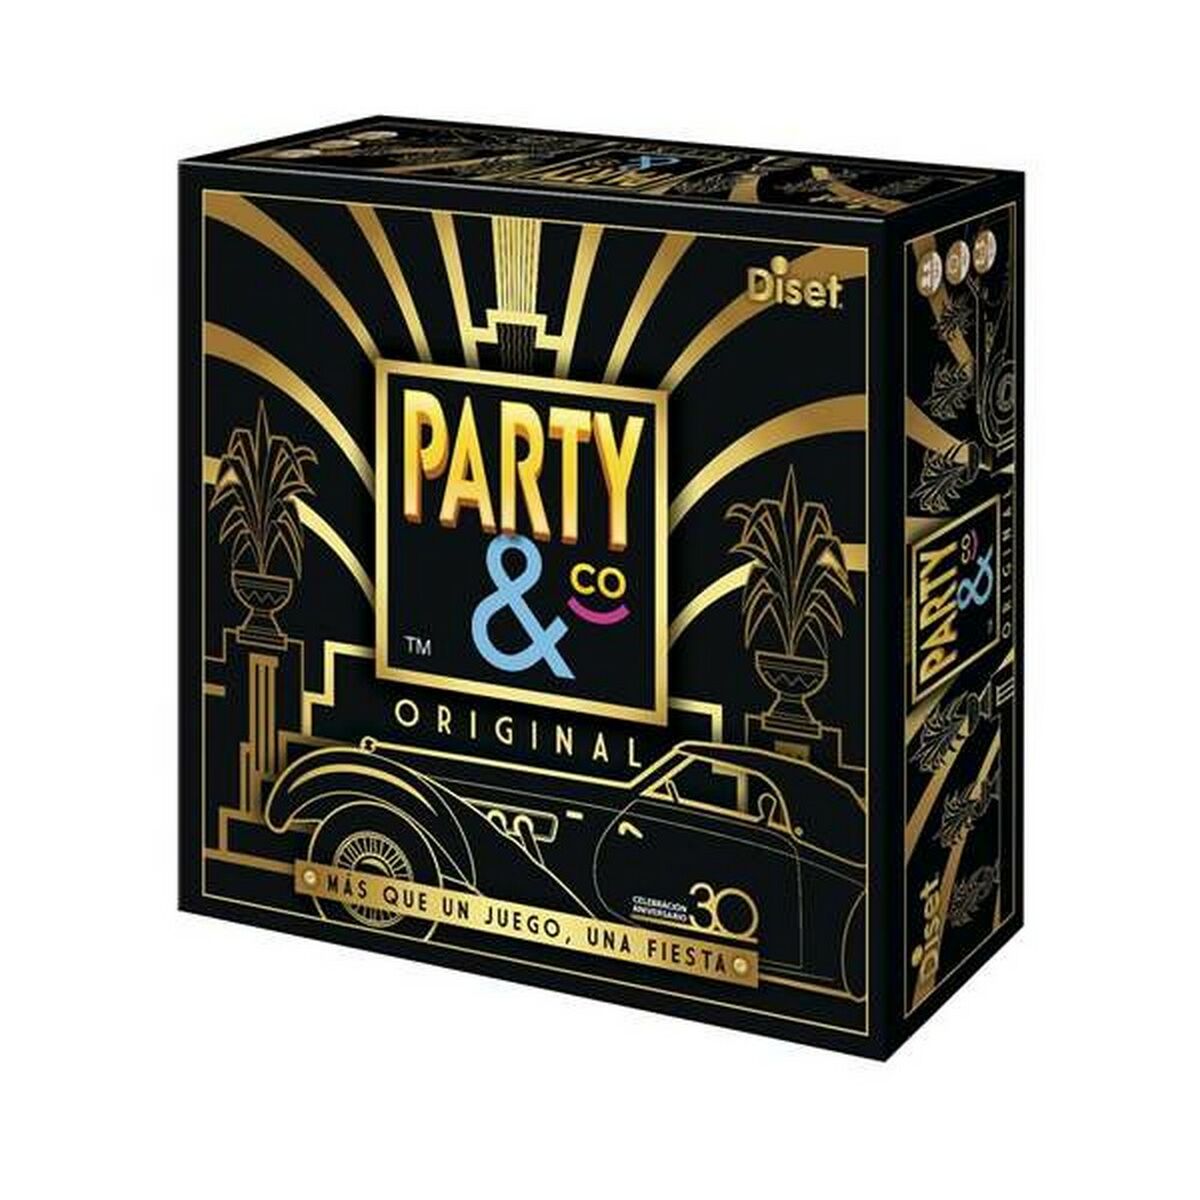 Sällskapsspel Party & Co Original Diset 10201 (ES)-Leksaker och spel, Spel och tillbehör-Diset-peaceofhome.se